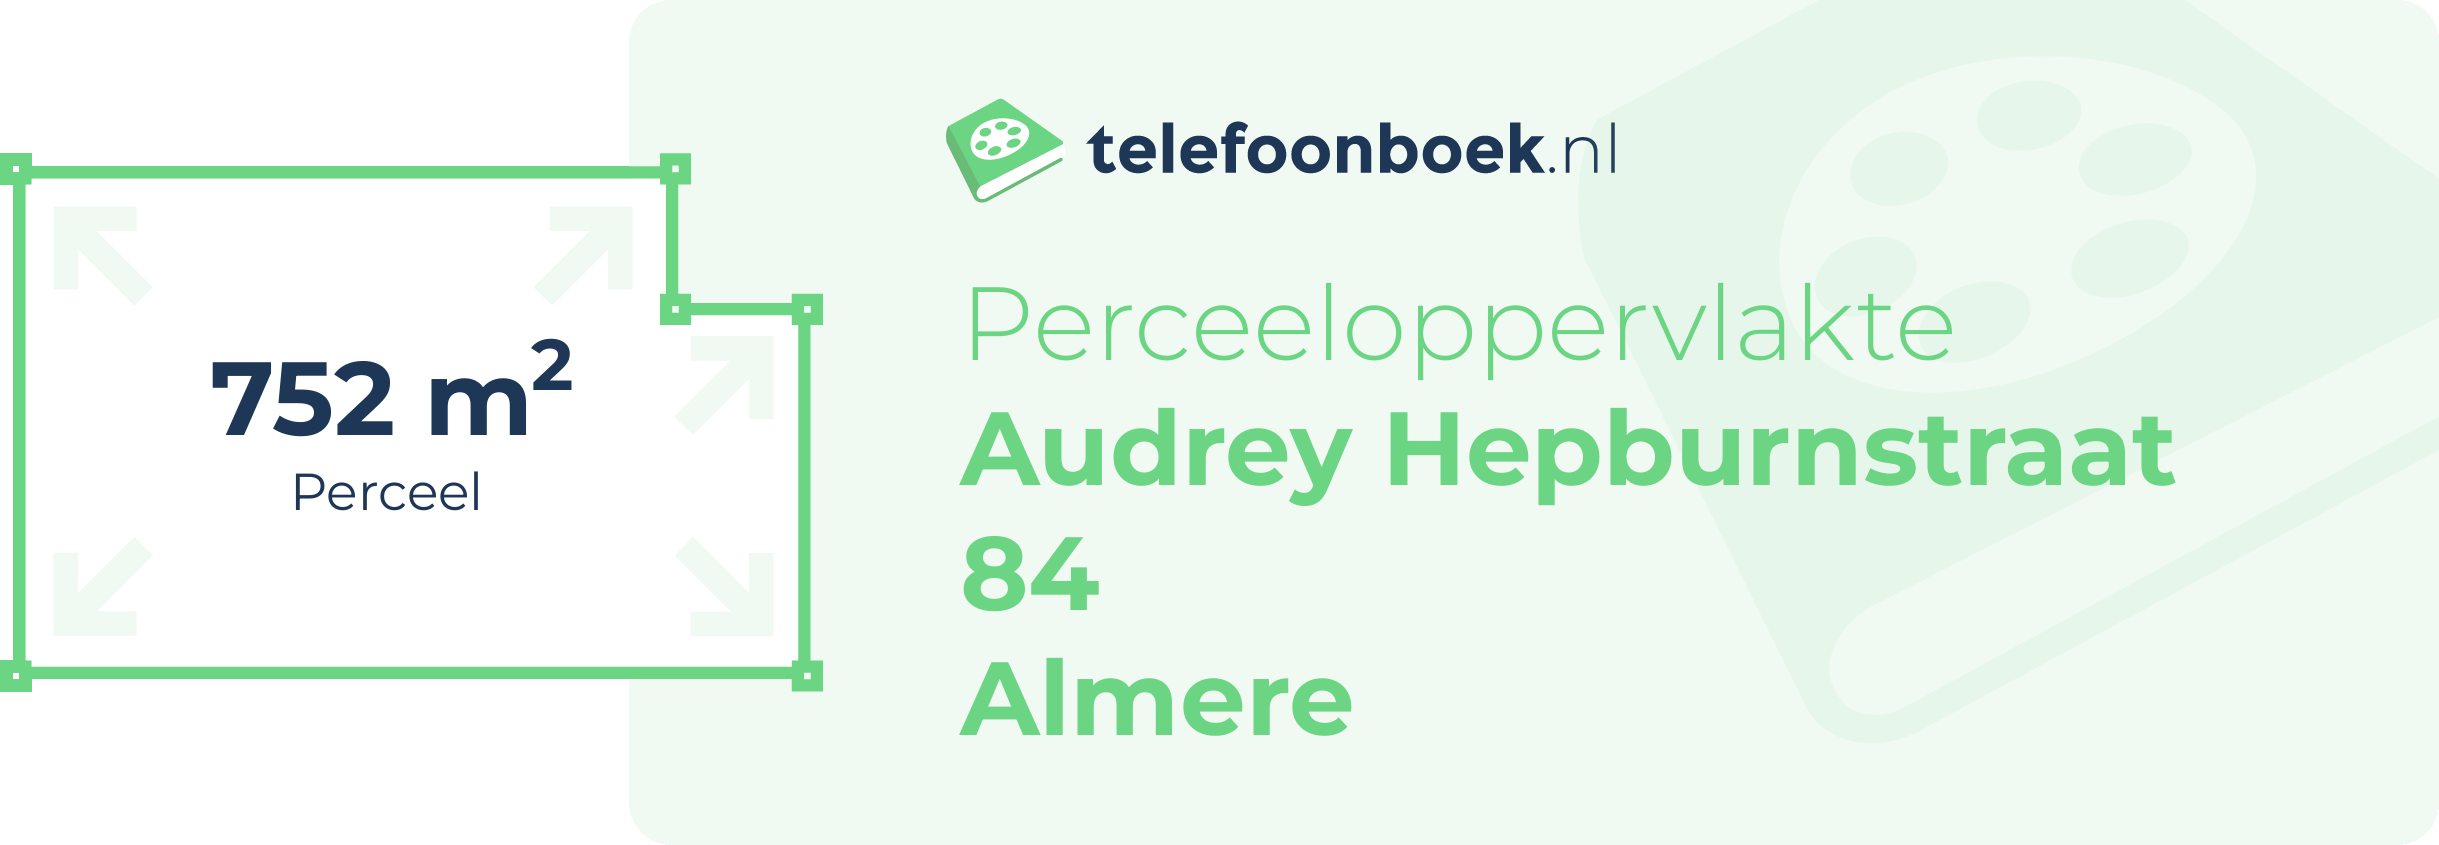 Perceeloppervlakte Audrey Hepburnstraat 84 Almere